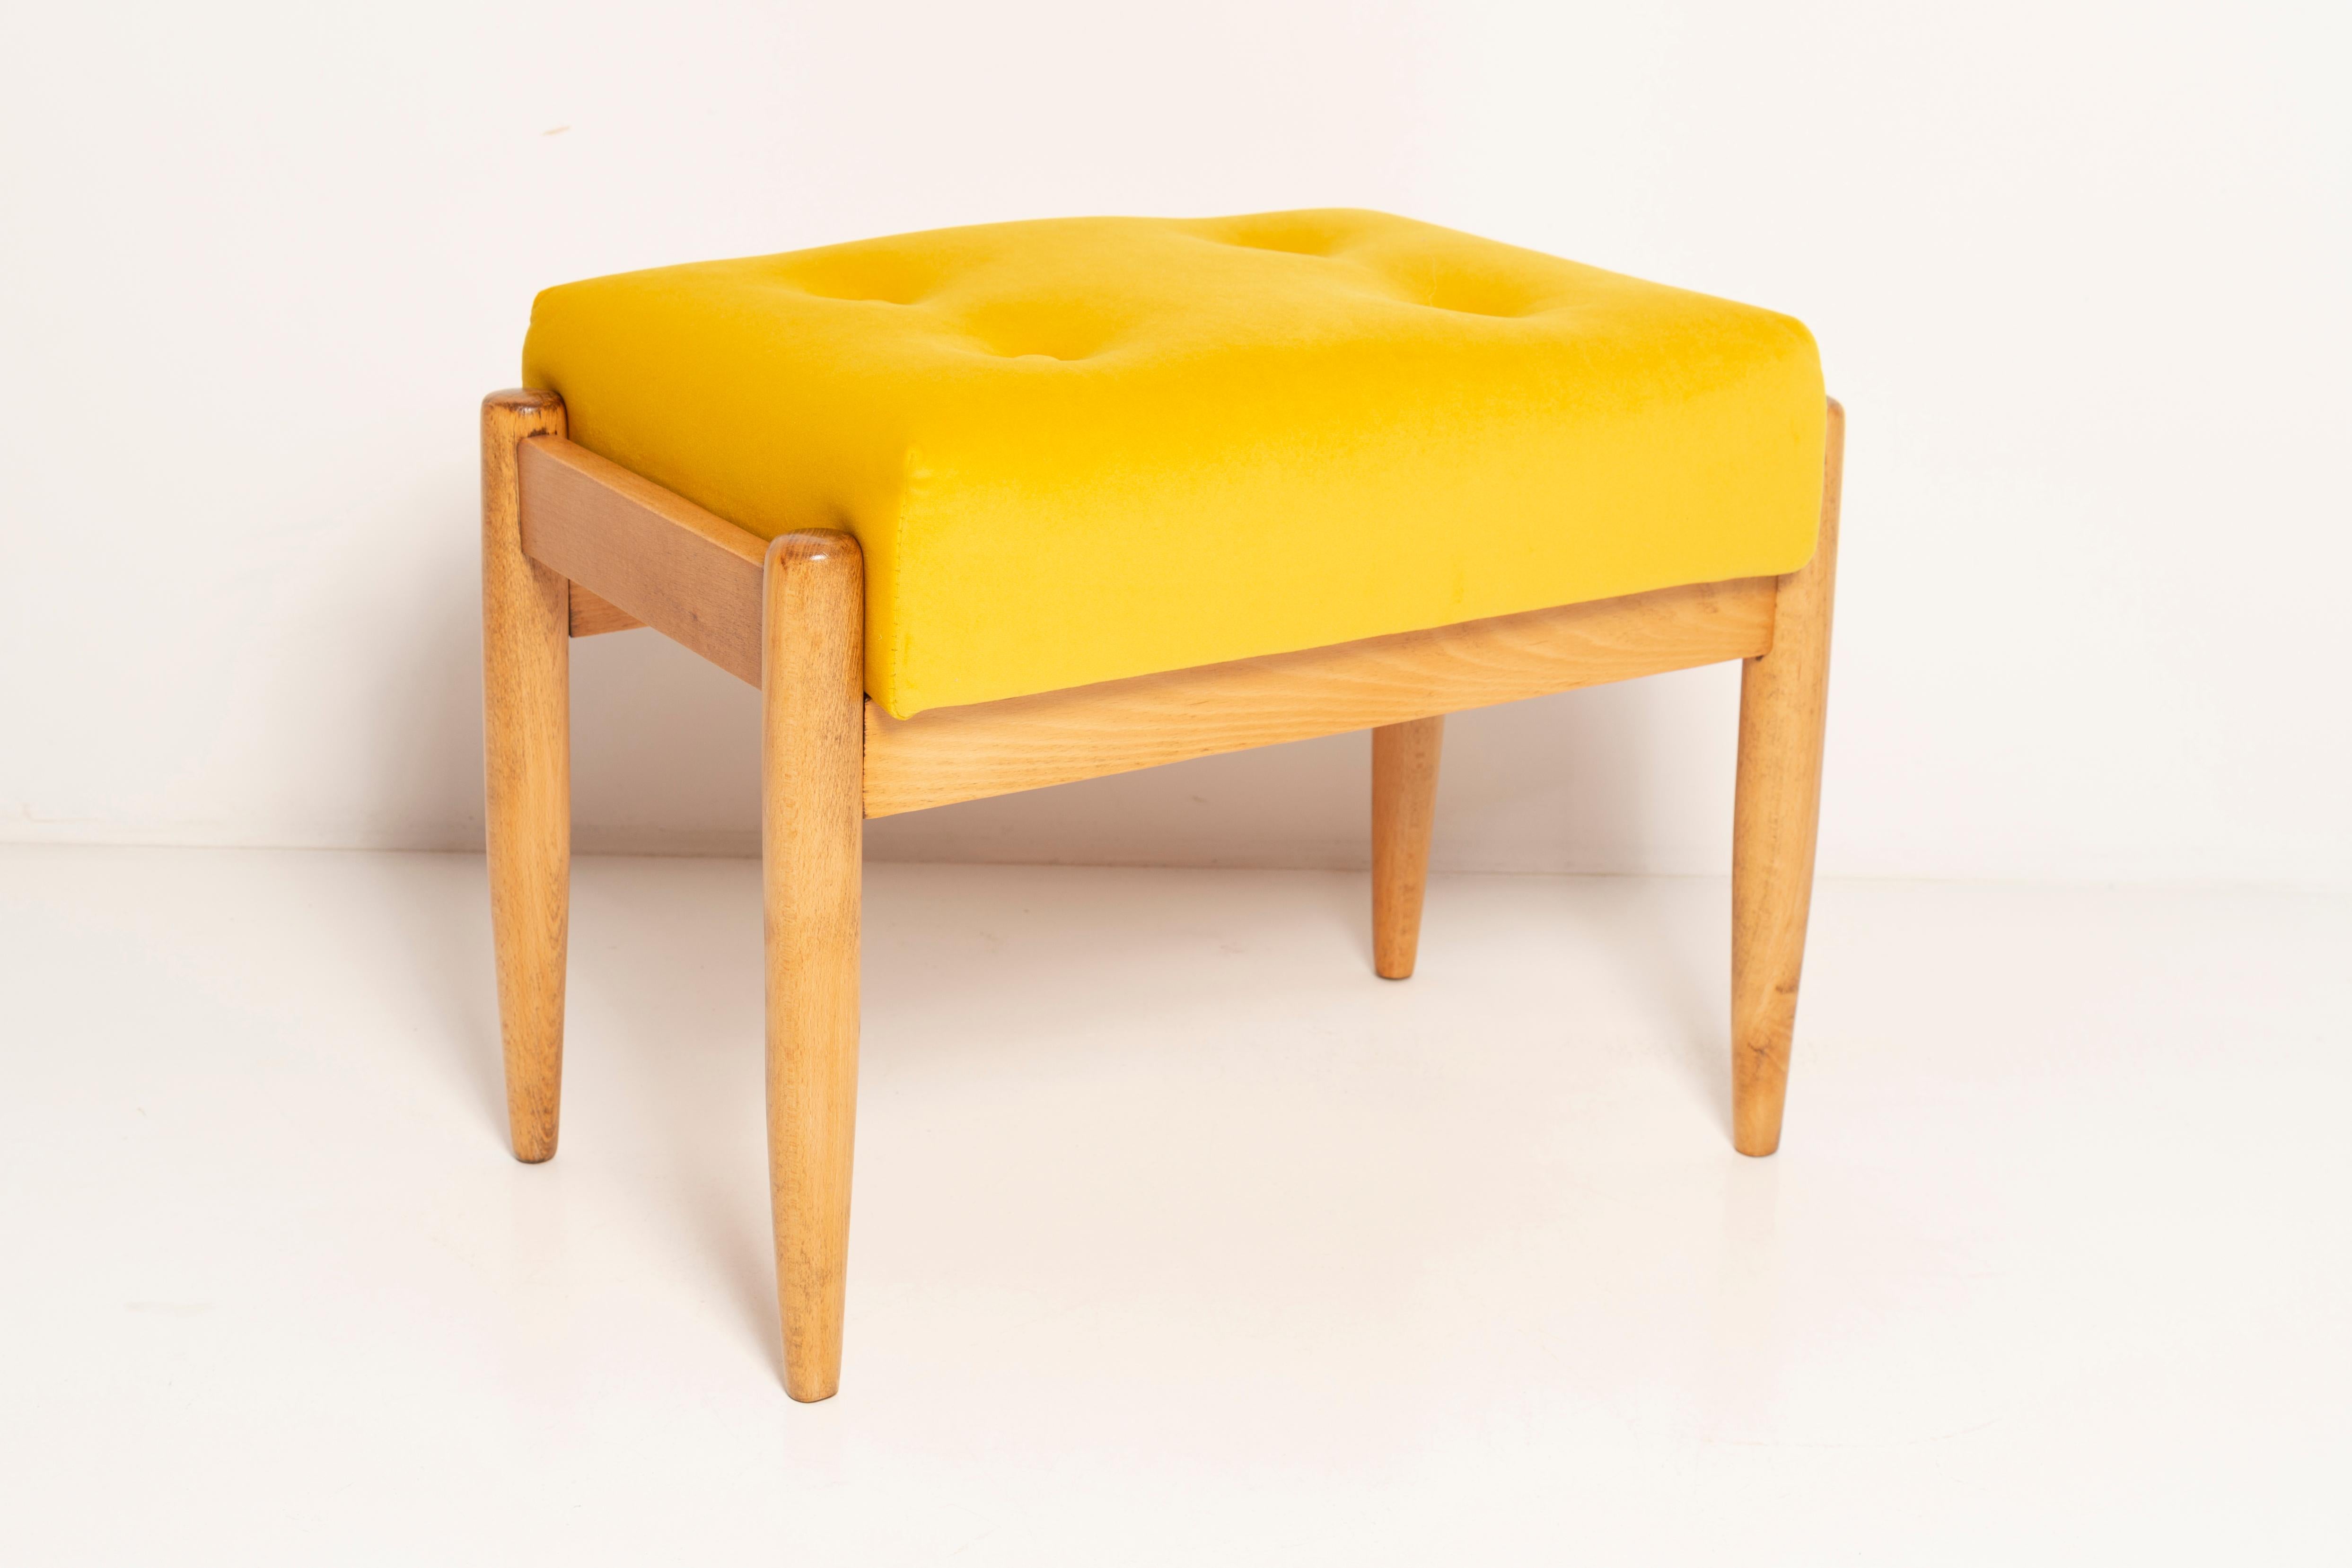 Tabouret du tournant des années 1960. Magnifique revêtement en velours de haute qualité de couleur jaune moutarde. Le tabouret est composé d'une partie rembourrée, d'une assise et de pieds en bois se rétrécissant vers le bas, caractéristiques du